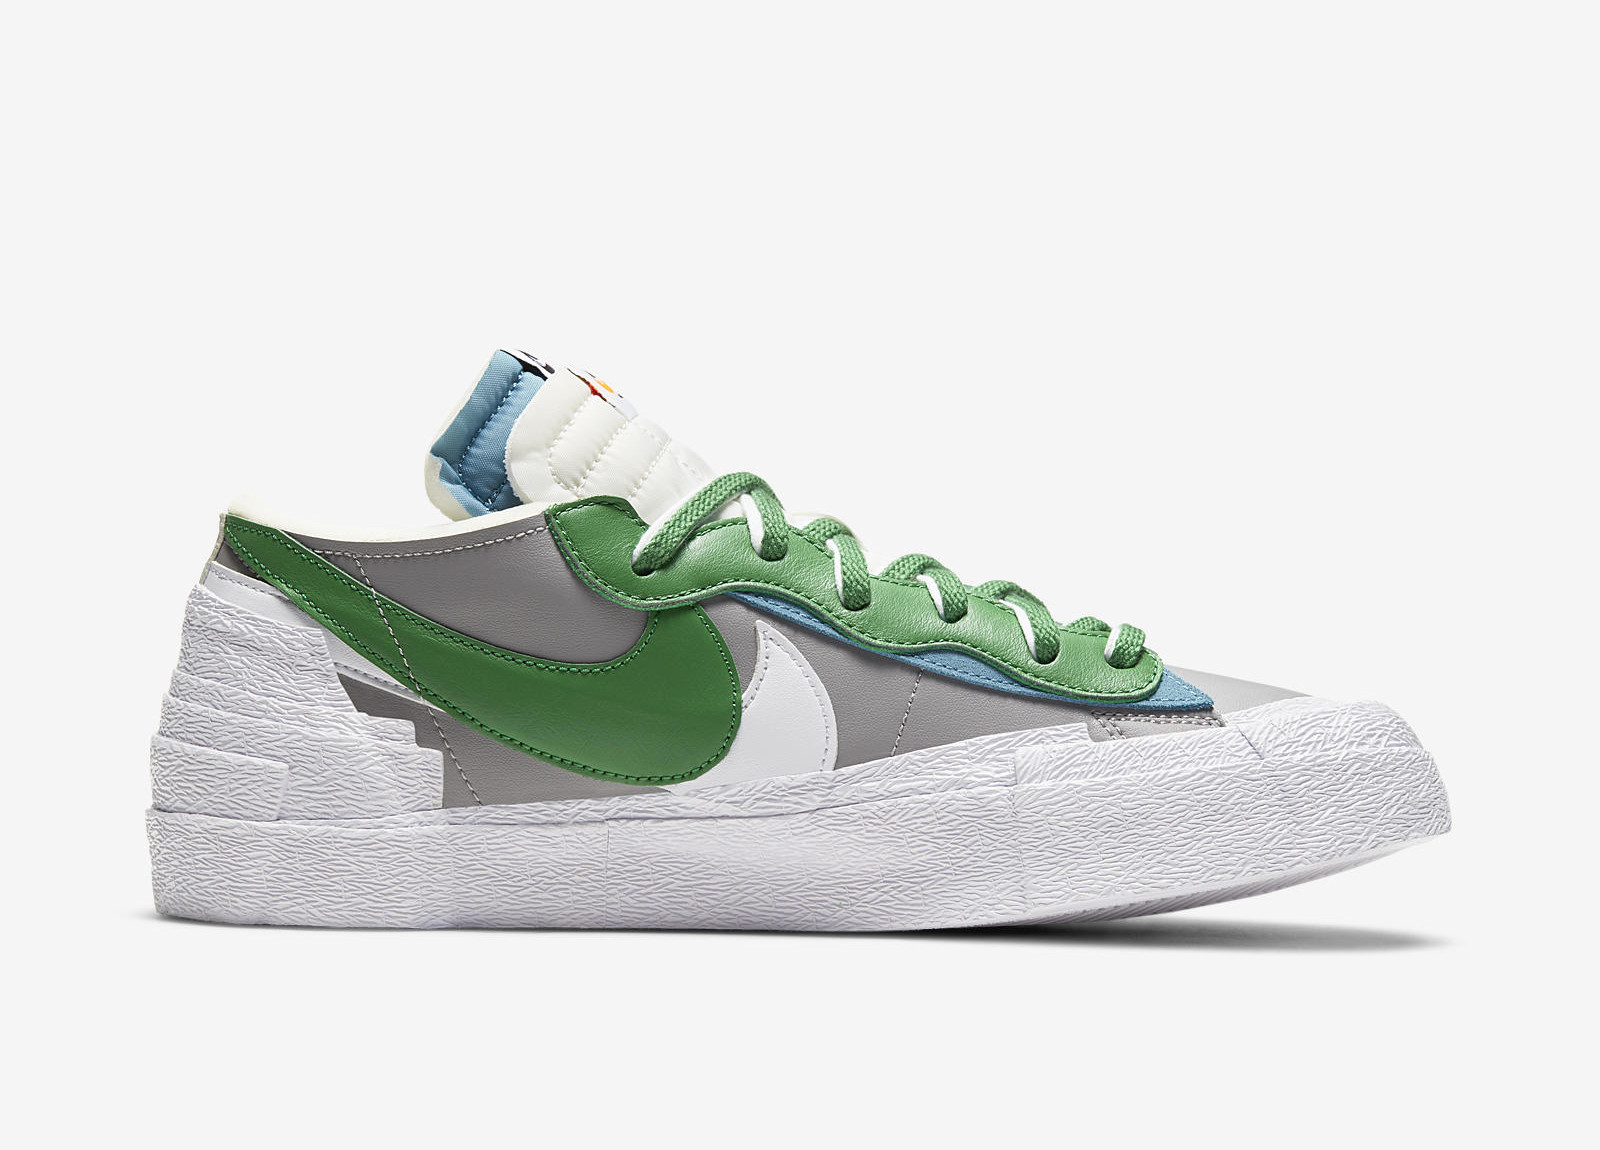 Nike x Sacai
Blazer Low
Classic Green